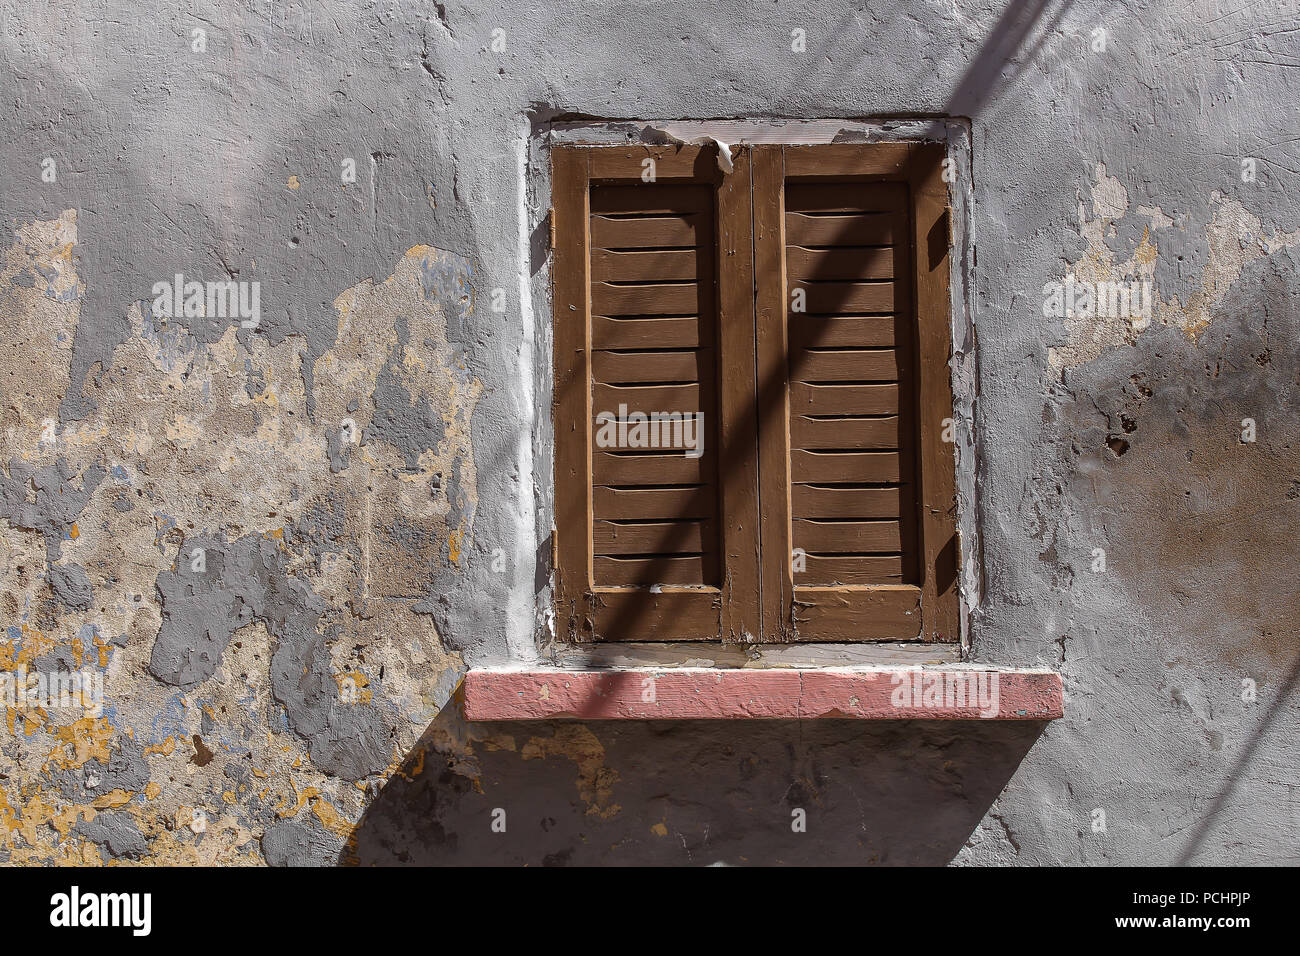 Couleur gris patiné de la façade d'une maison à El Jadida, Maroc. Fenêtre avec un obturateur fermé brun en bois. Les lignes d'ombre des câbles dans le stre Banque D'Images